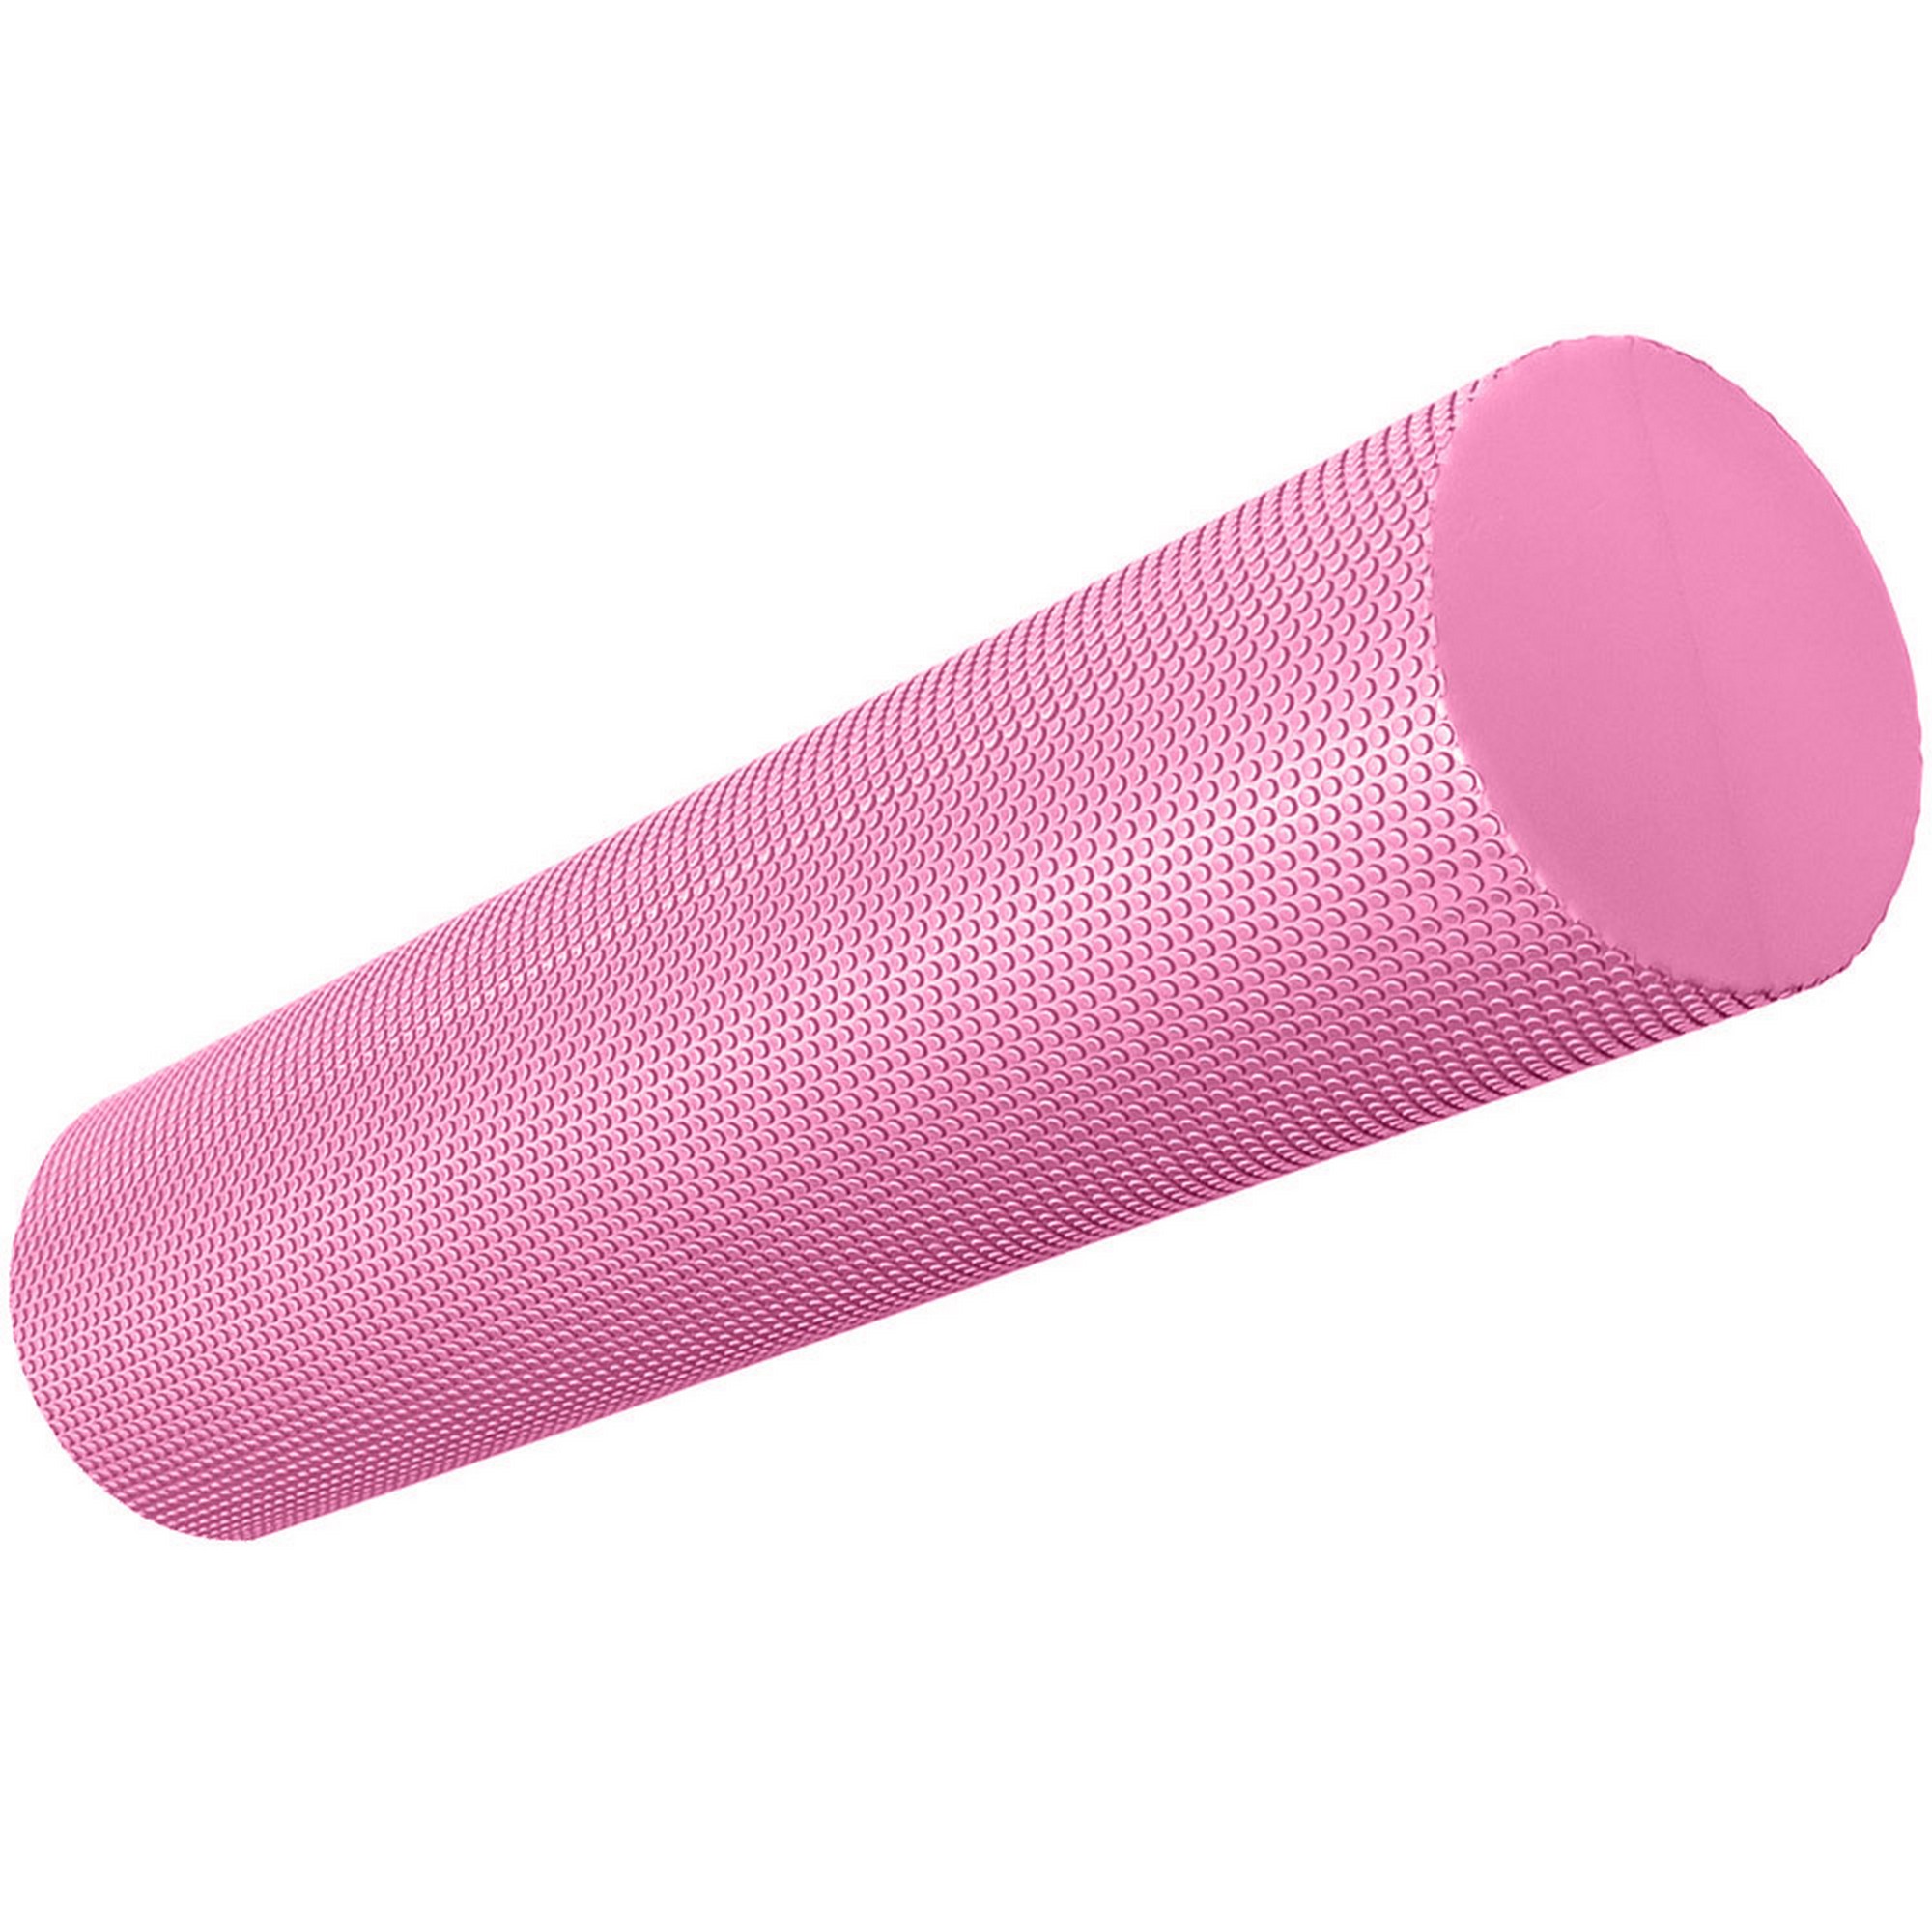 Купить Ролик для йоги полумягкий Профи 45x15см Sportex ЭВА E39104-4 розовый,